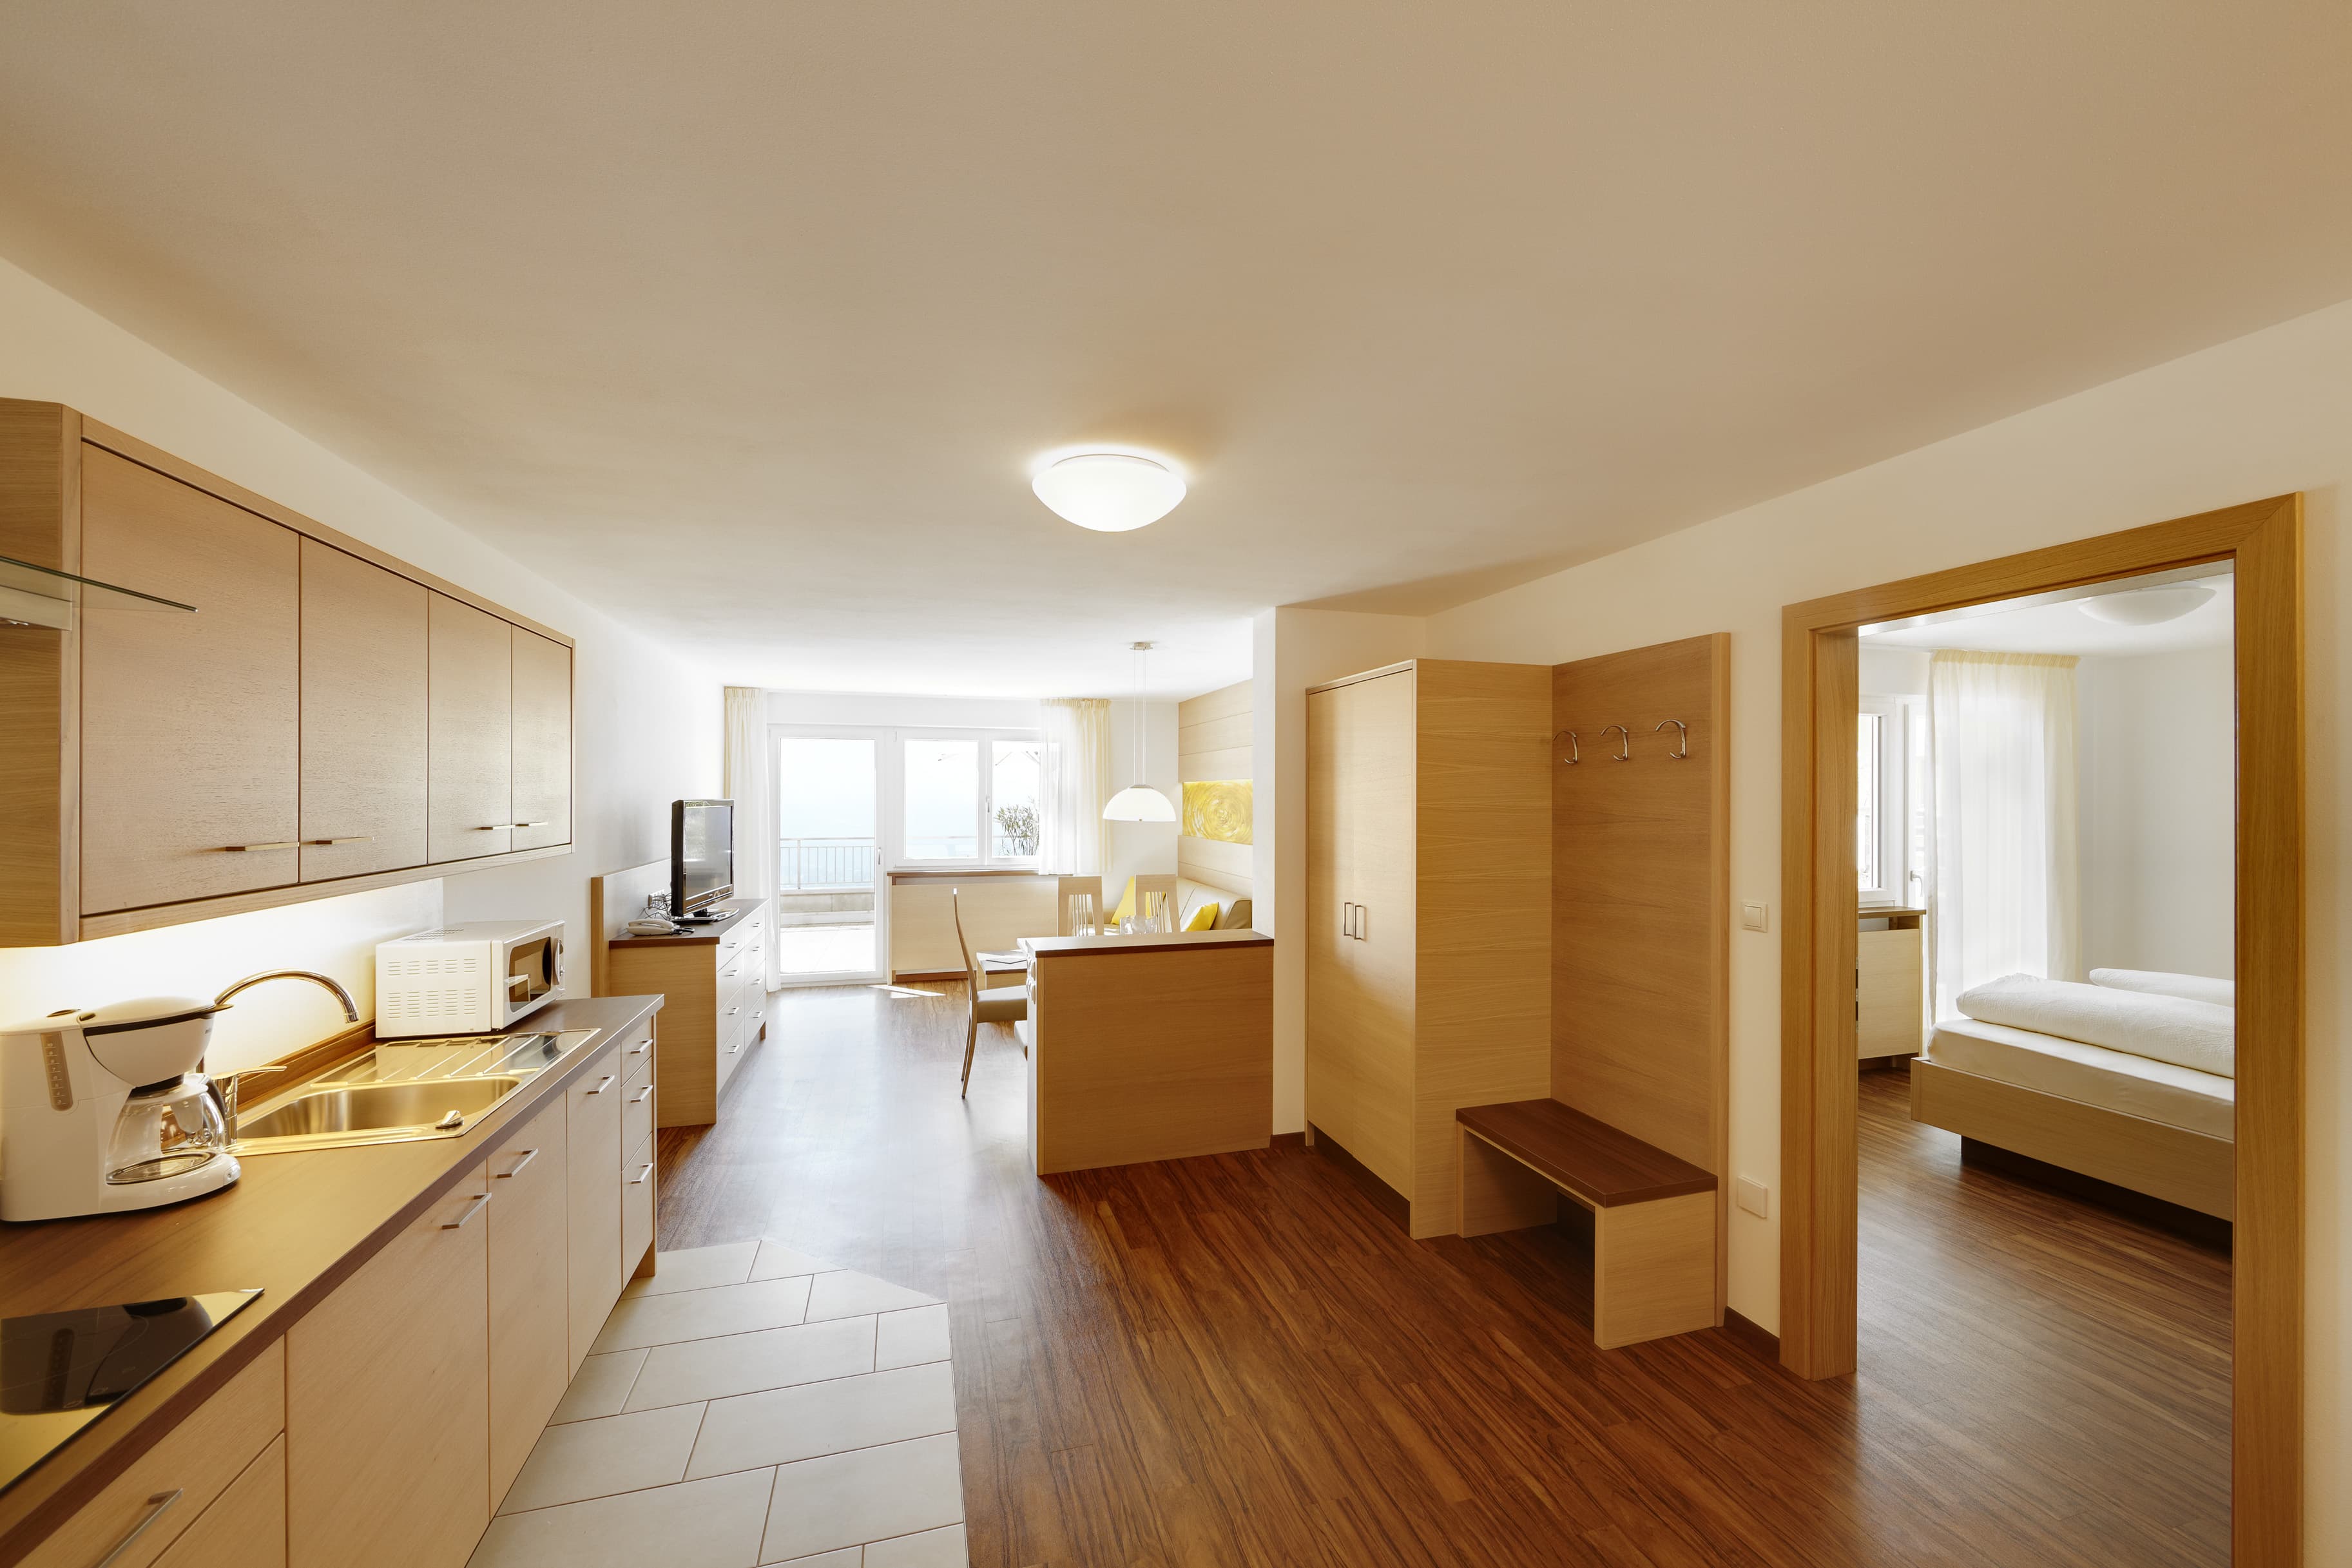 Appartement Typ C Kochnische Wohnraum Schlafzimmer Balkon Residence Lechner